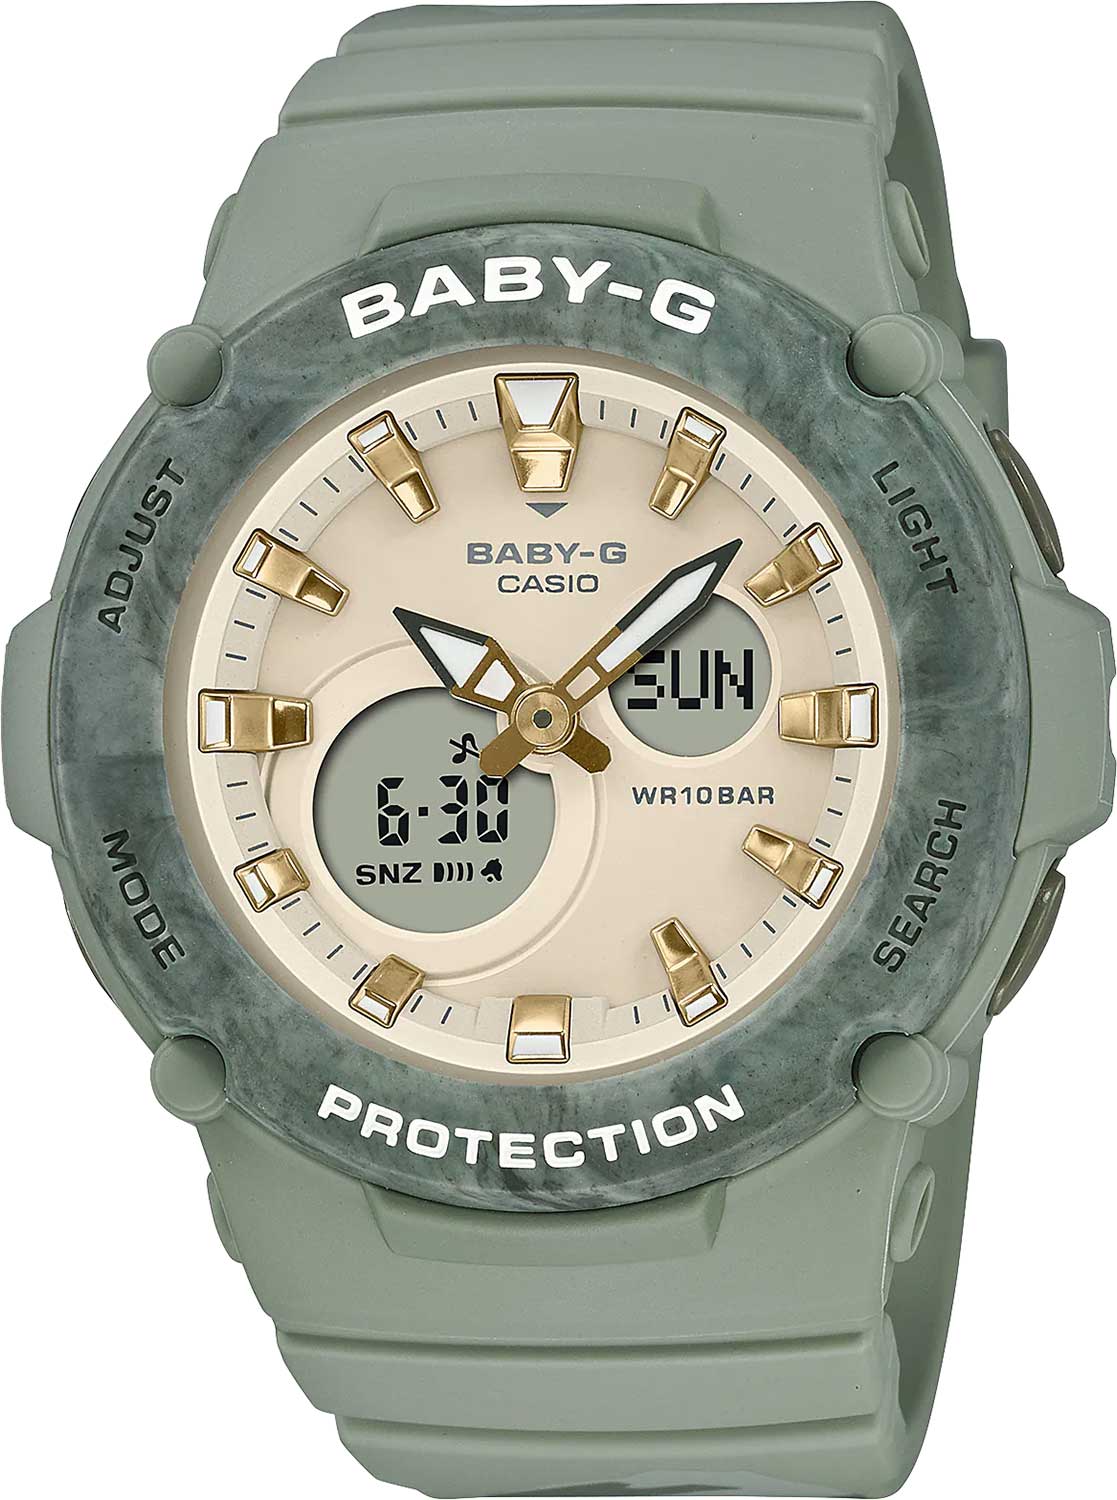    Casio Baby-G BGA-275M-3A  